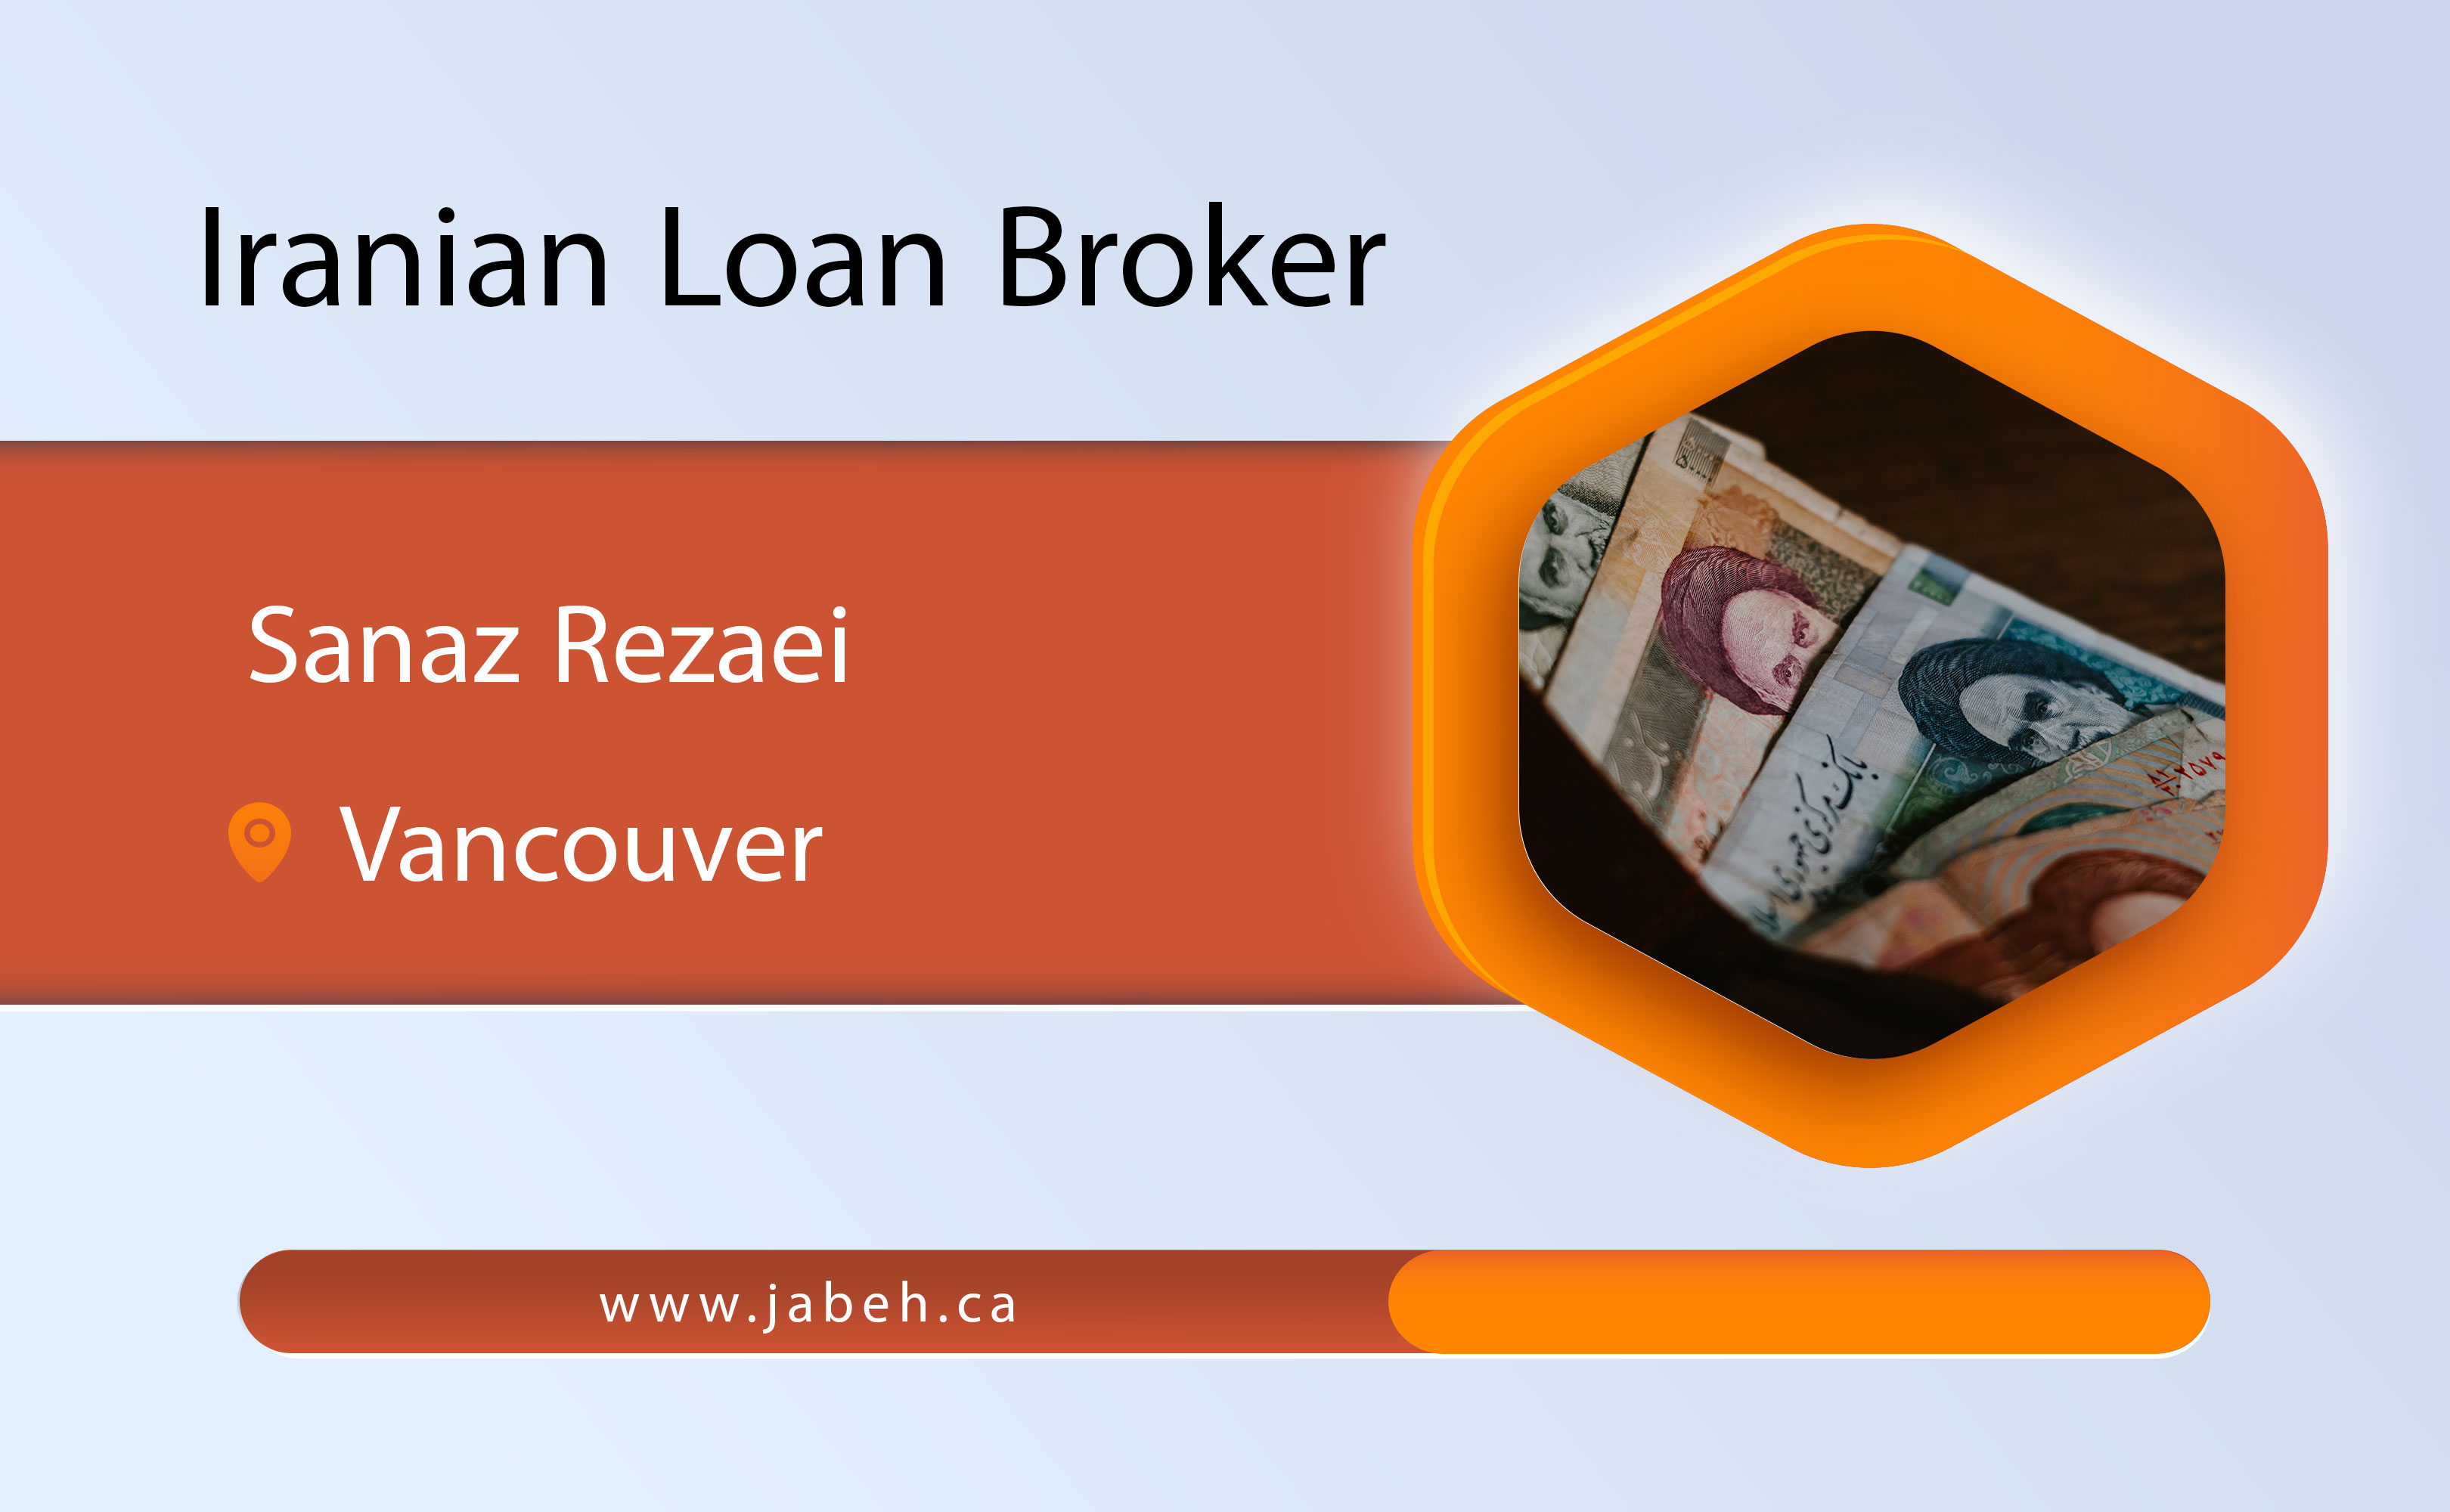 Iranian loan broker Sanaz Rezaei in Vancouver